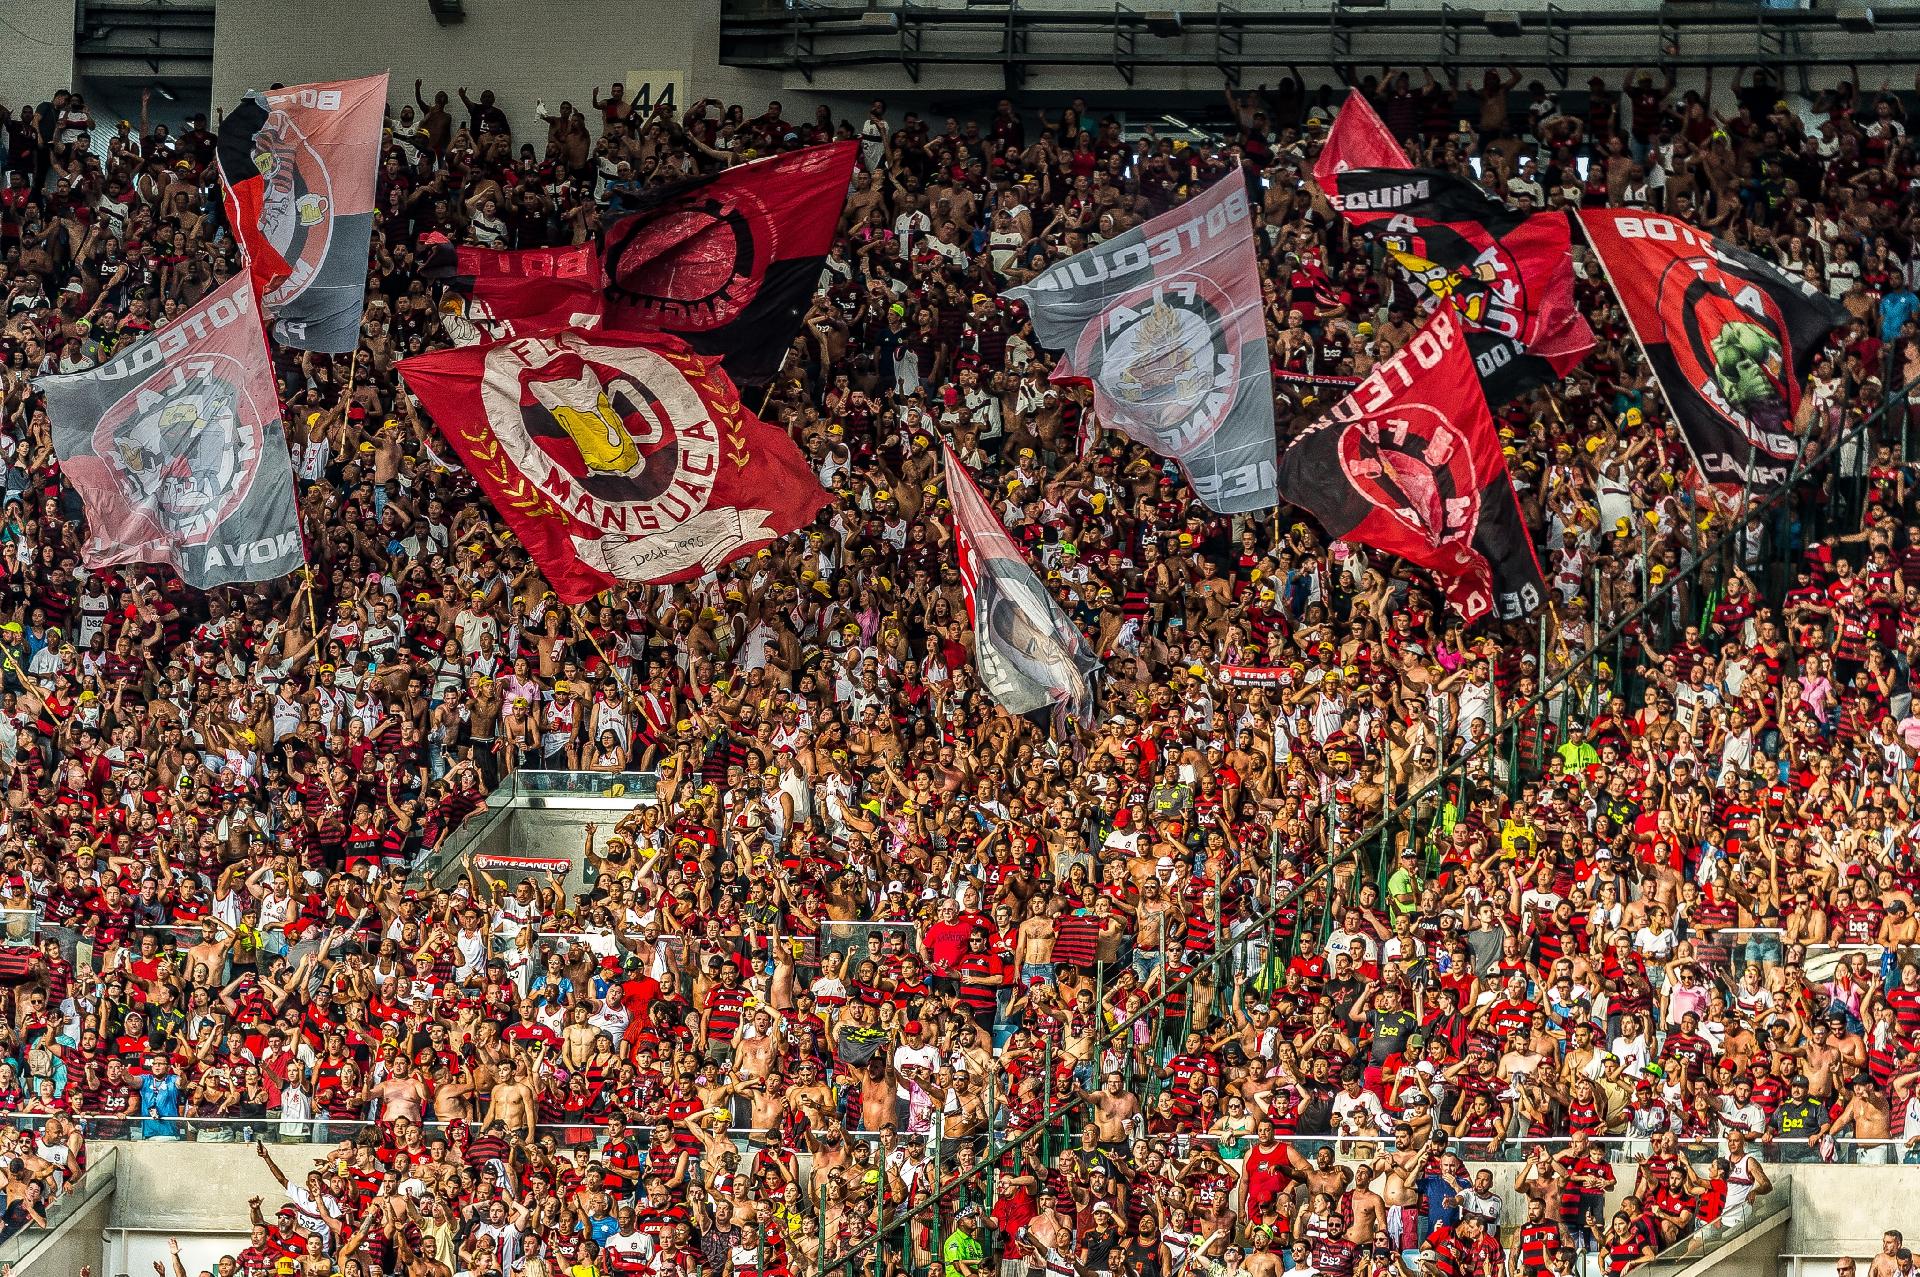 1º lugar - Flamengo: 39.272.981 torcedores